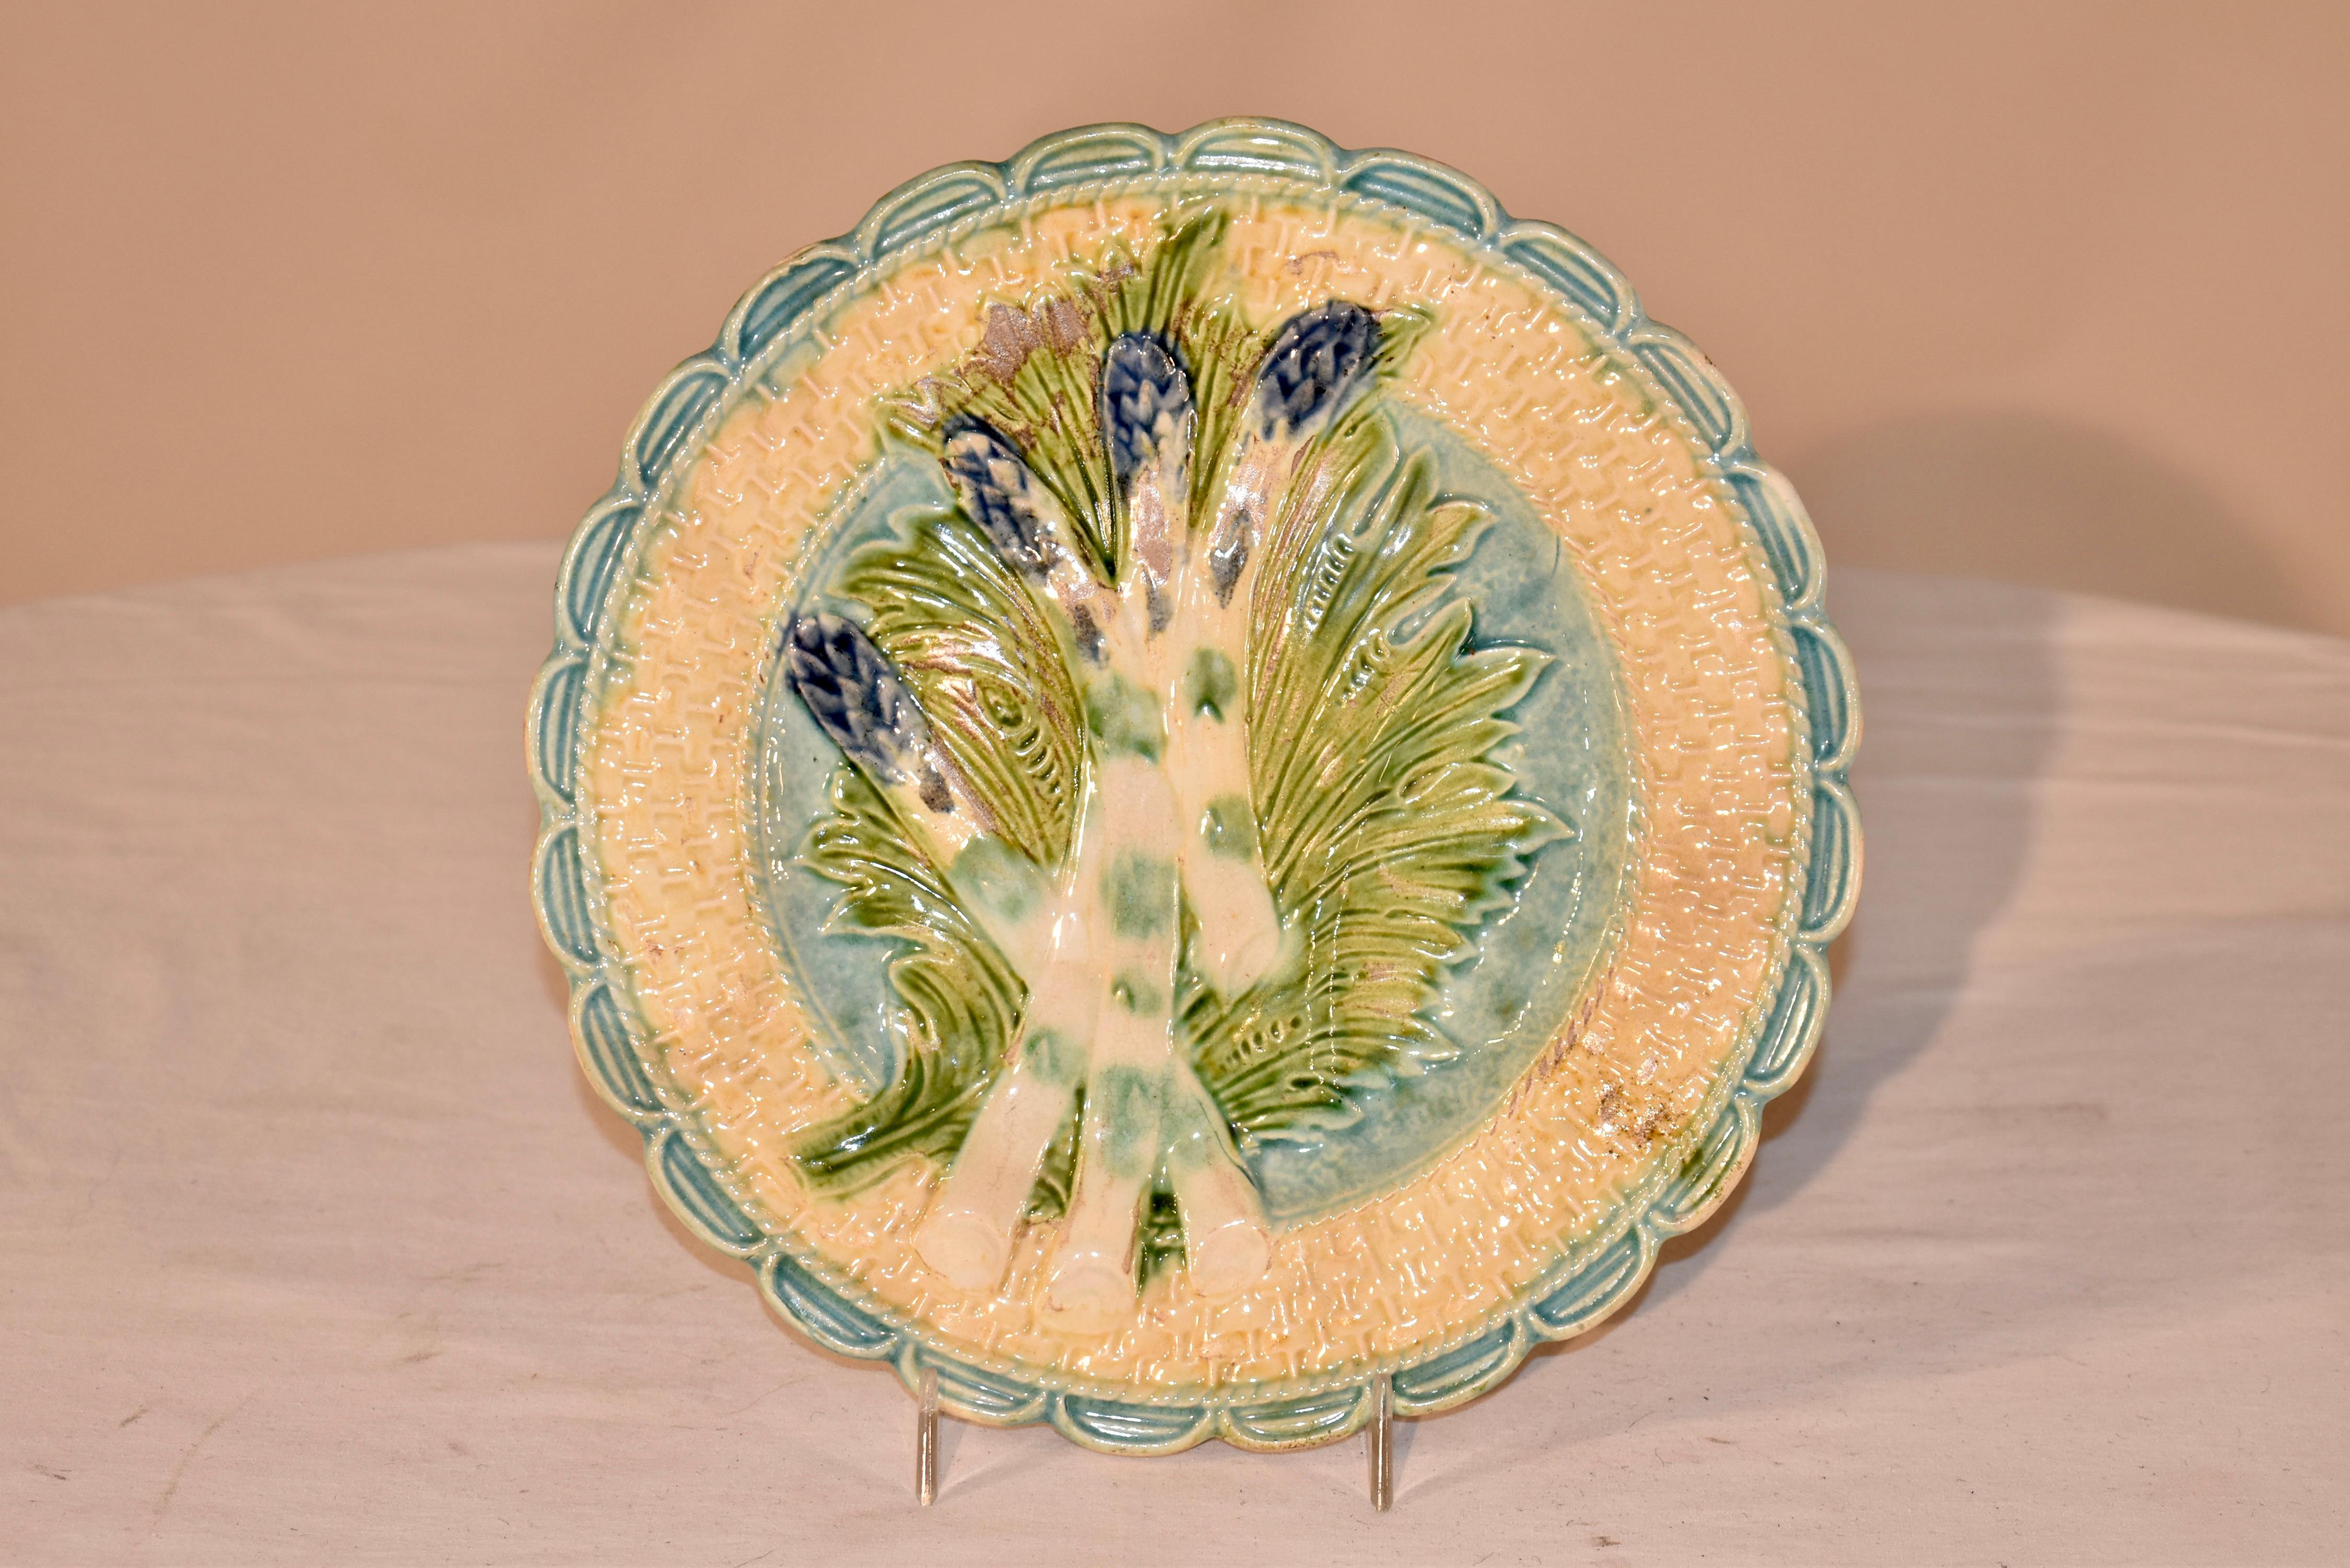 Assiette à asperges en majolique française de la fin du XIXe siècle, fabriquée par Salins, vers 1880.  L'asperge est posée sur un lit de feuilles et semble être dans un panier avec une bordure festonnée.  Belle couleur et belle taille.